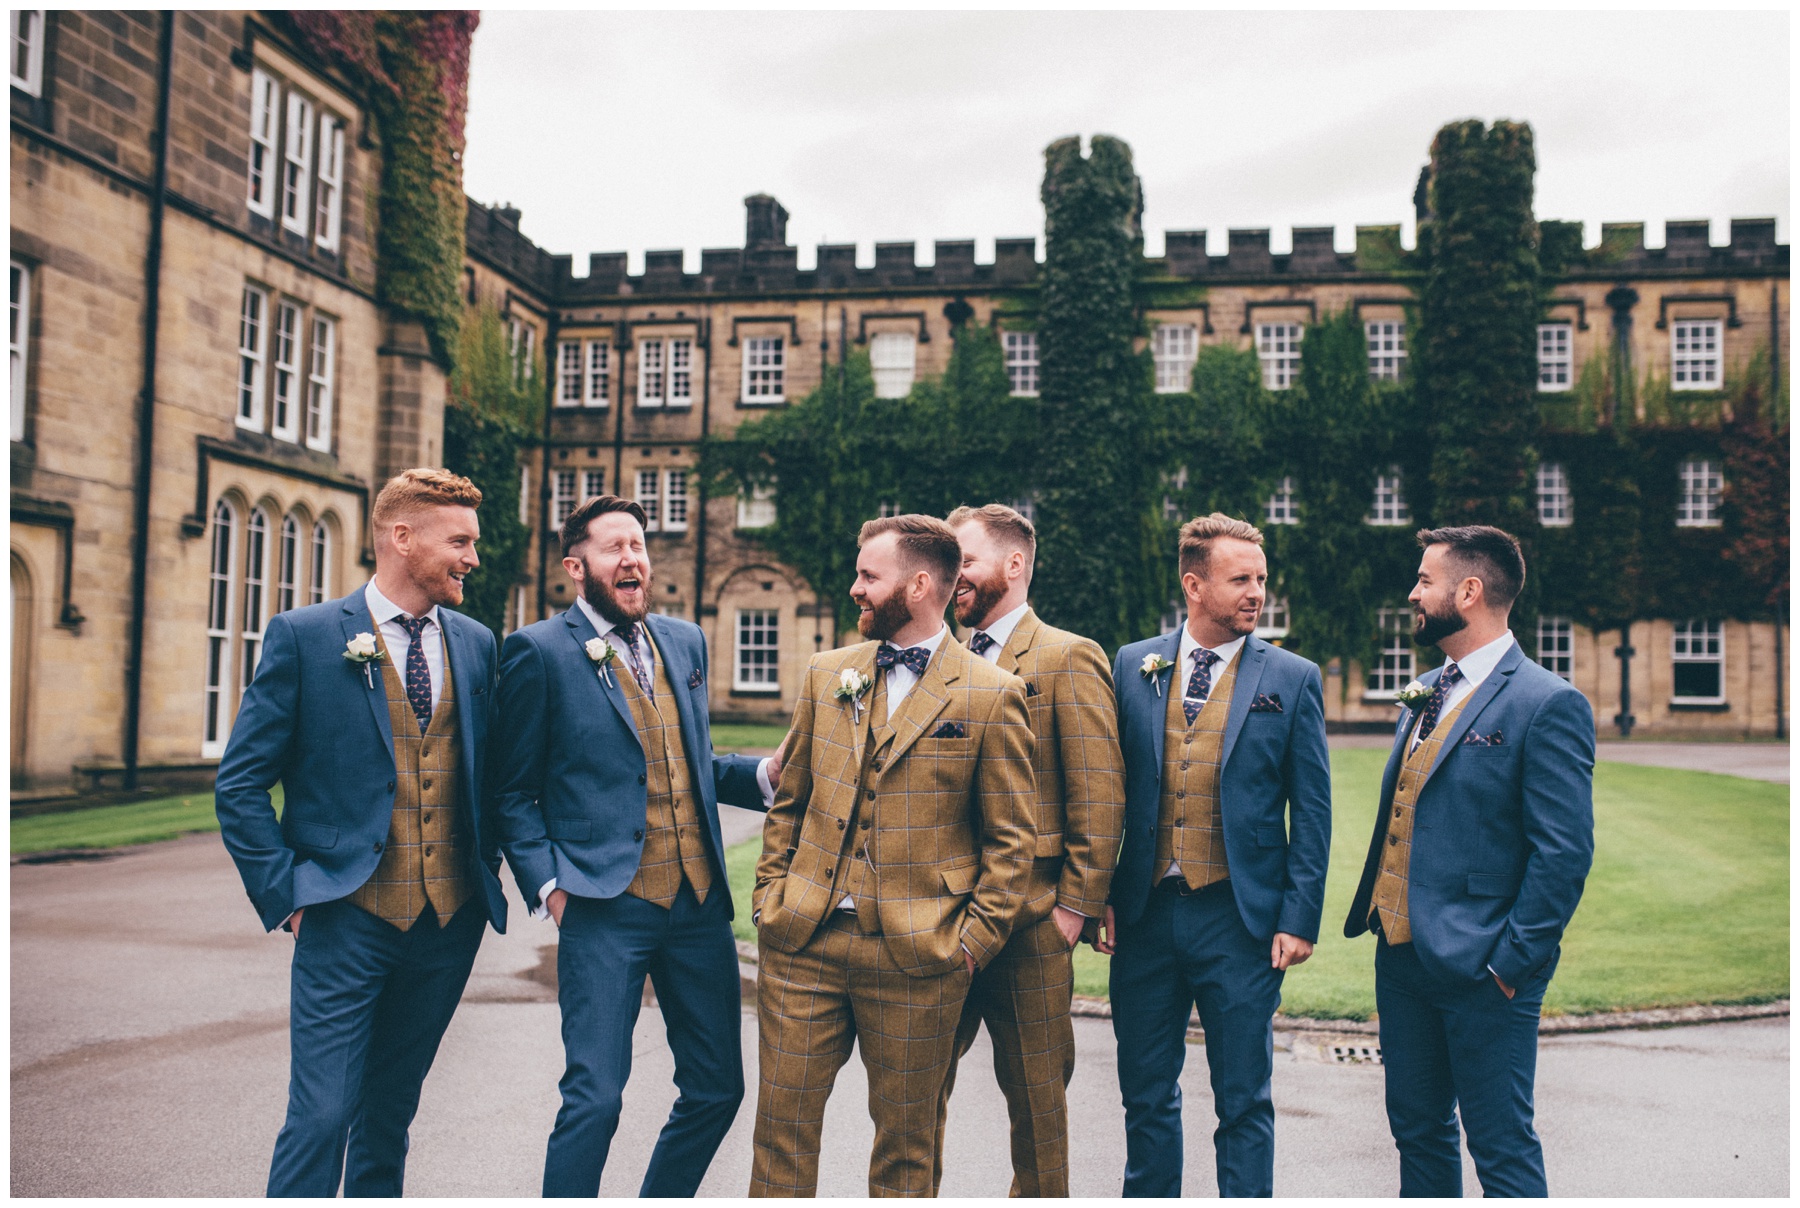 Groom and his groomsmen all dress in tweed at Swinton Park Estate wedding in Yorkshire.